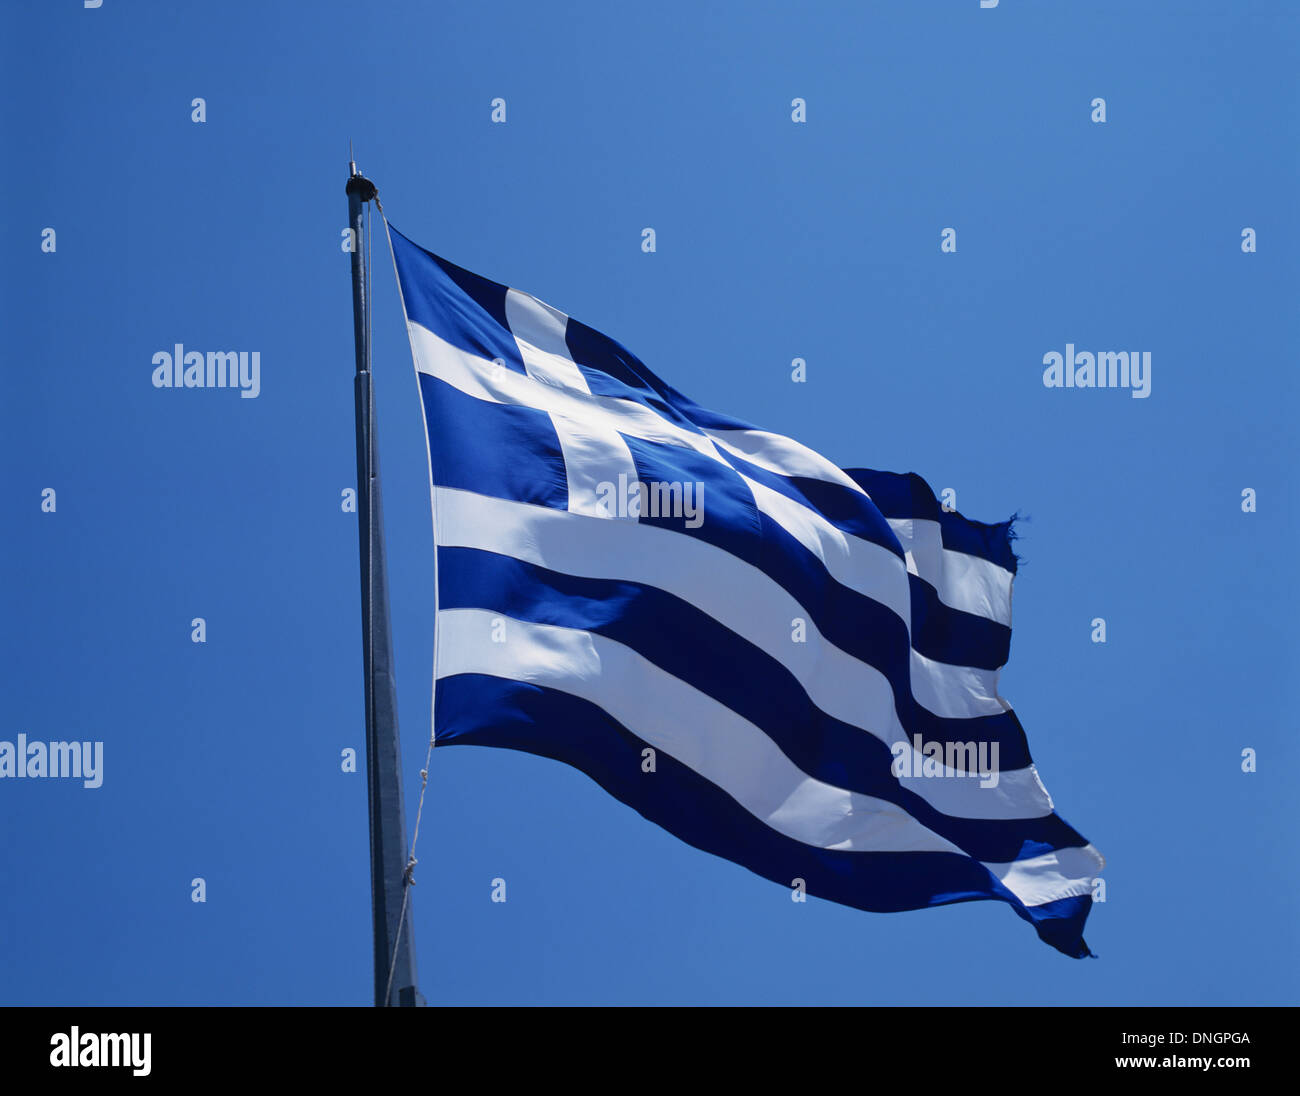 Le drapeau de la Grèce, Grèce, Europe Banque D'Images